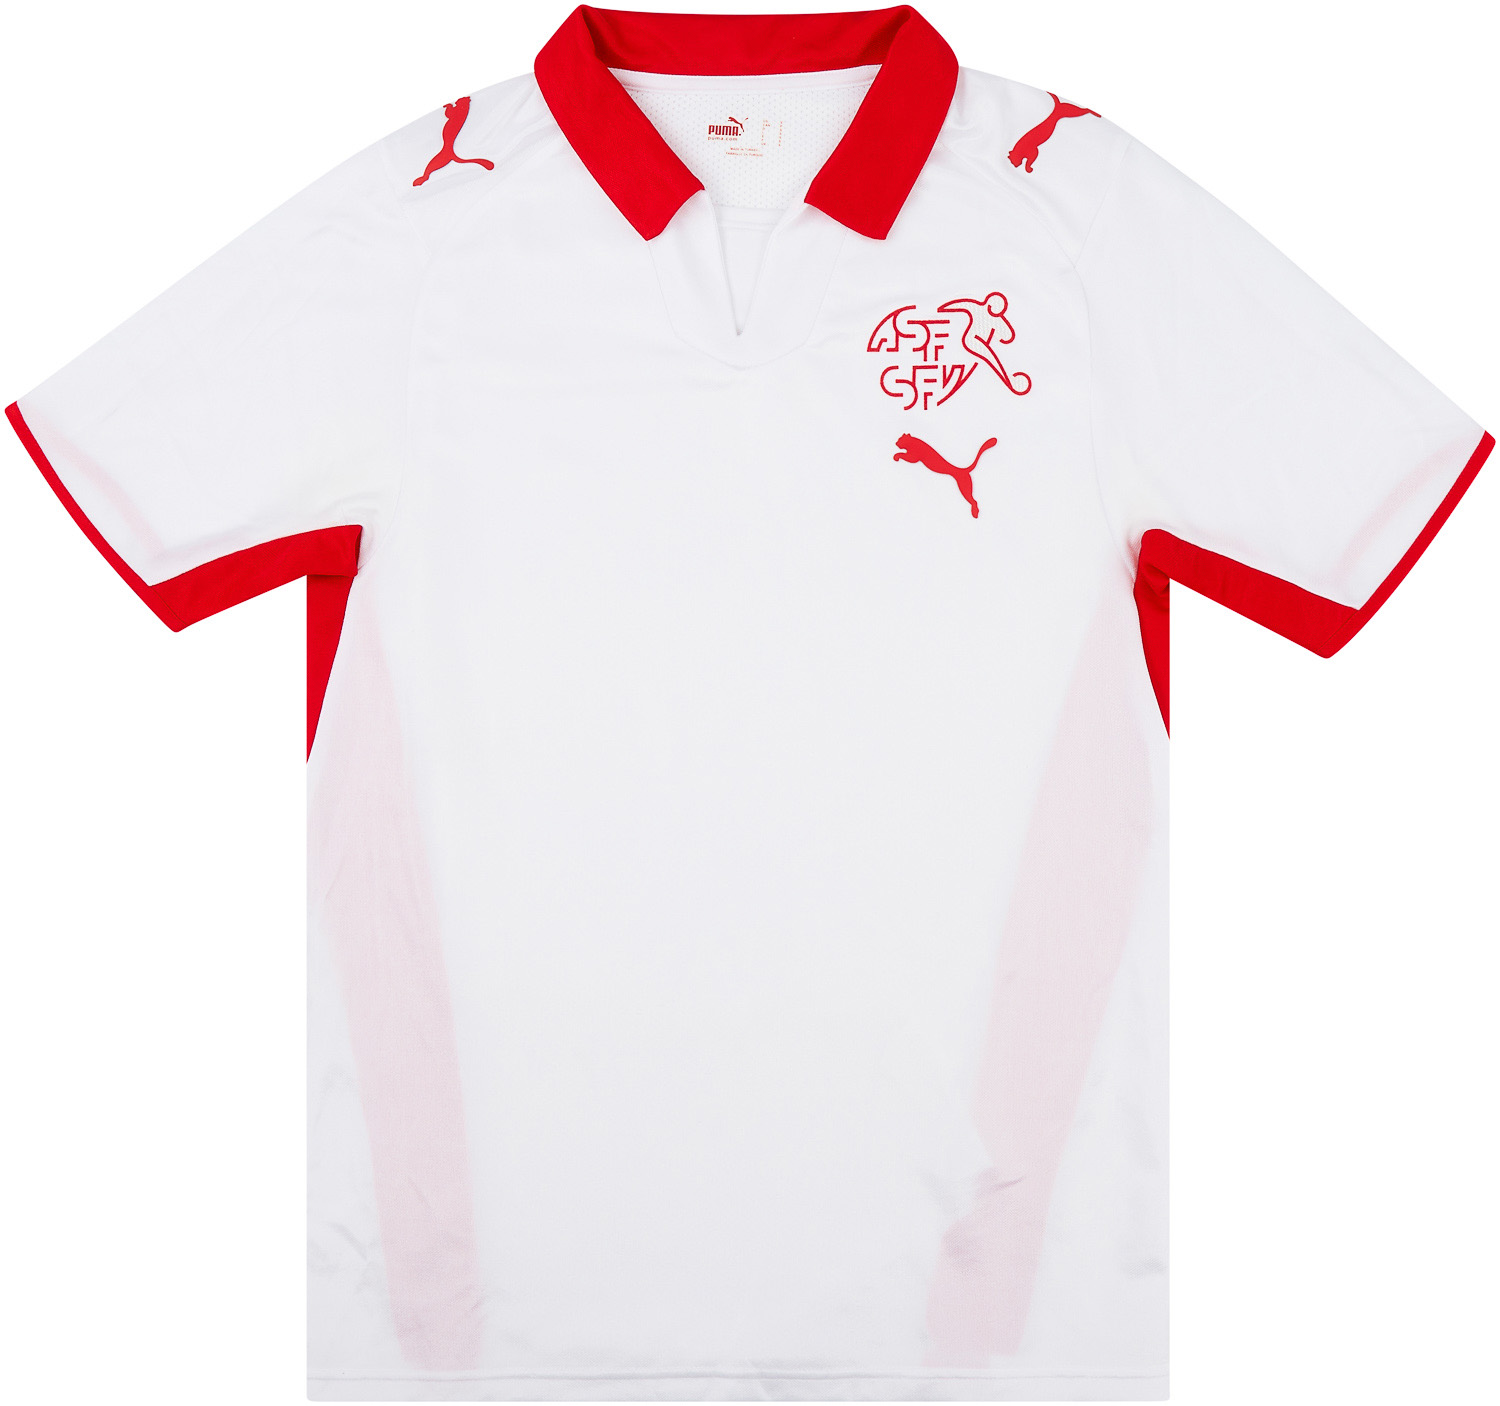 2008-10 Switzerland Away Shirt